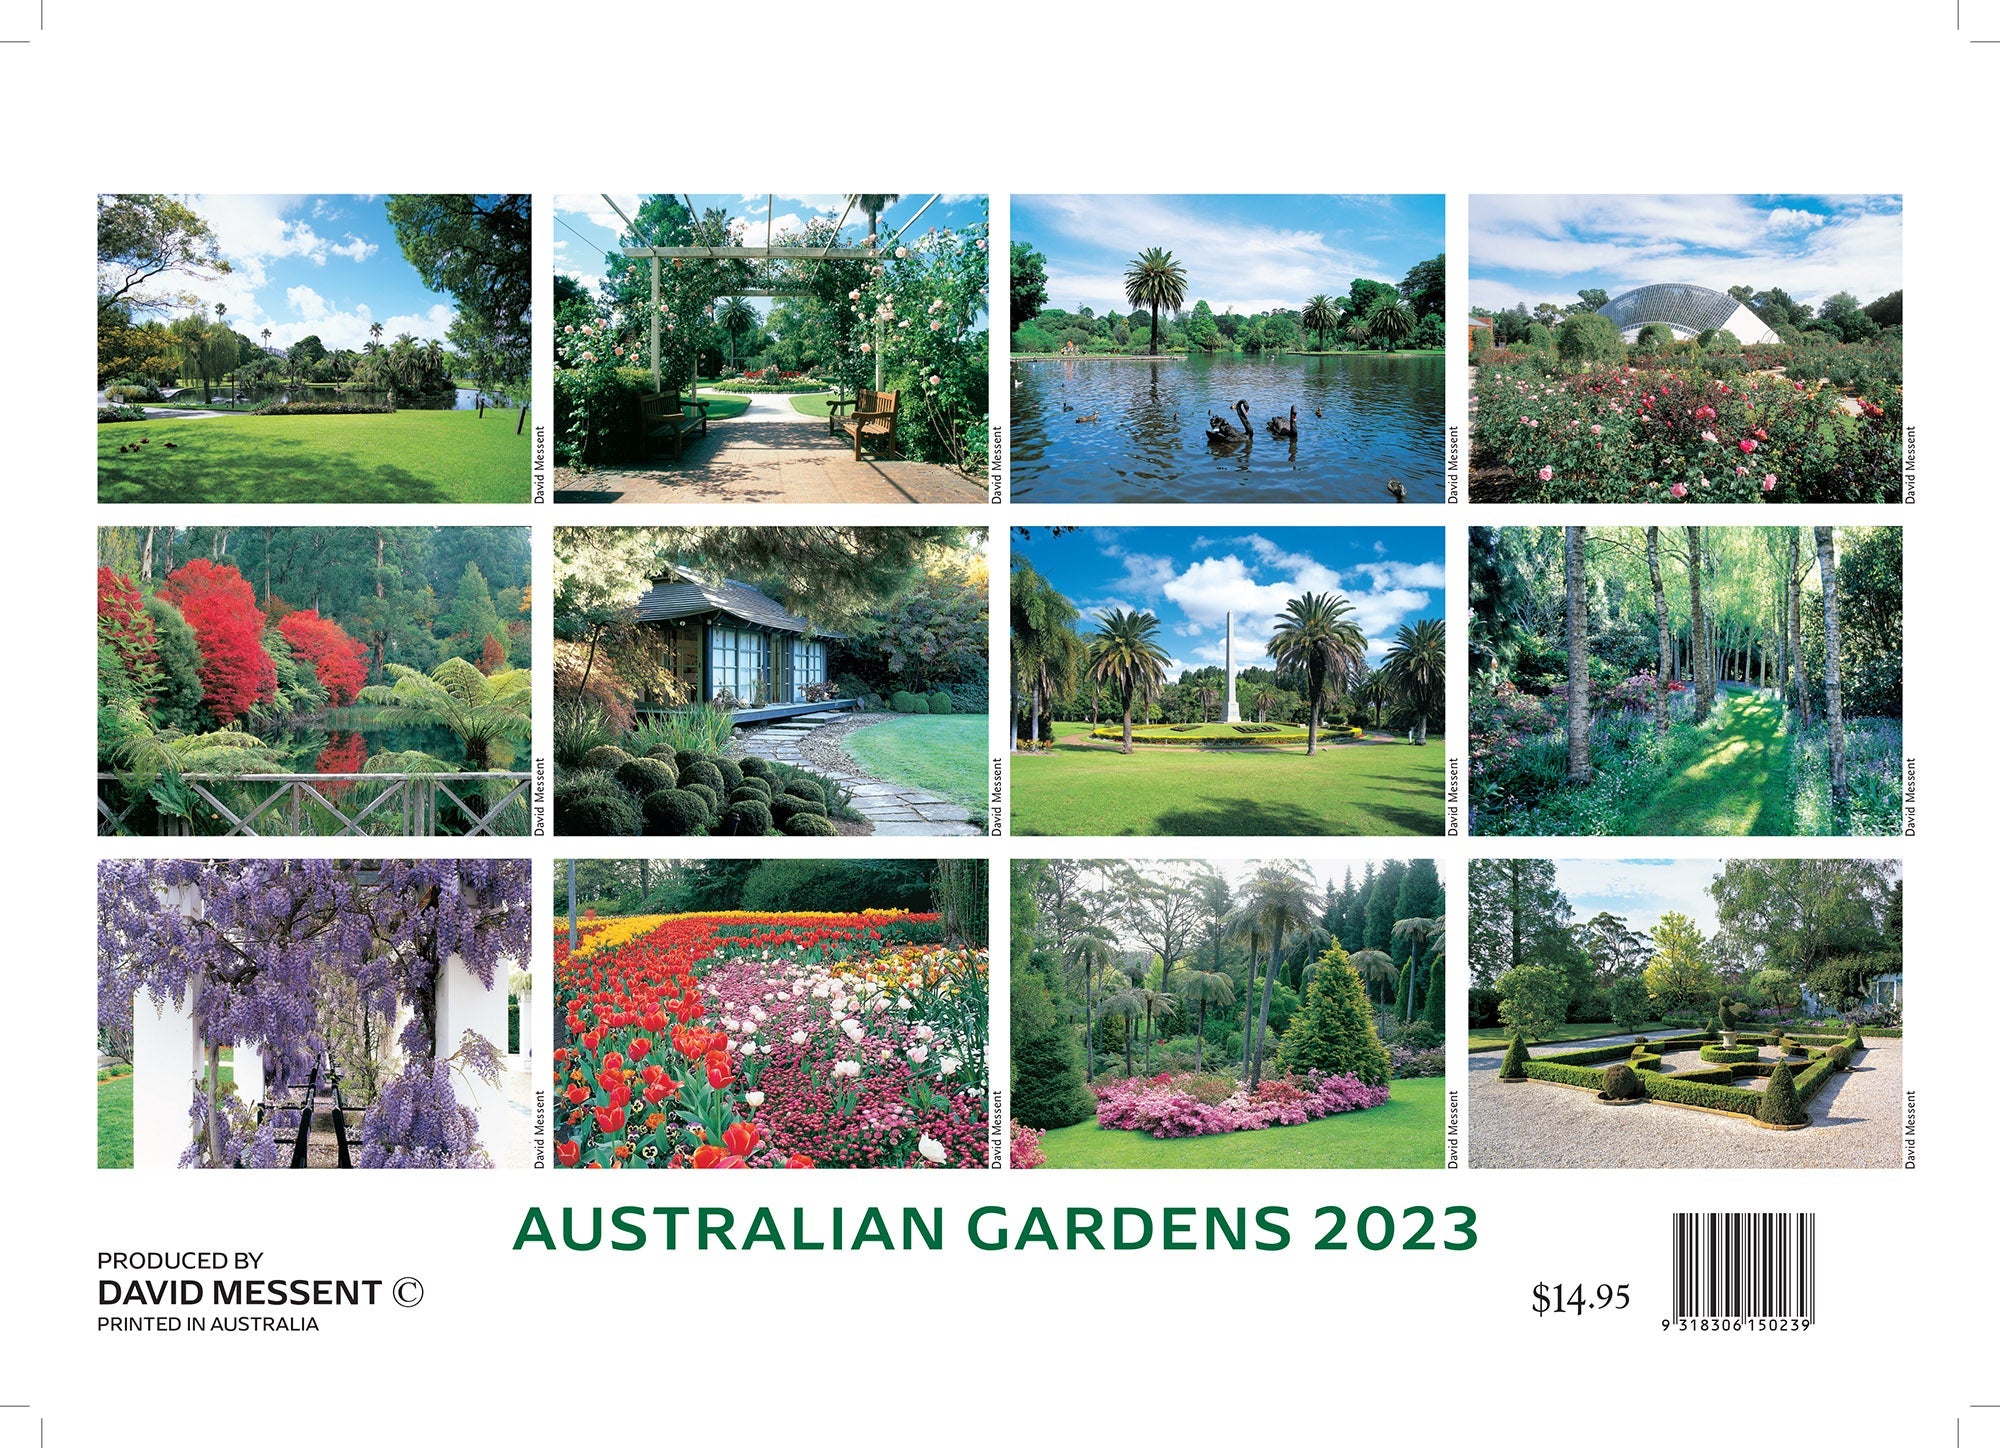 2023 Australian Gardens by David Messent - Horizontal Wall Calendar